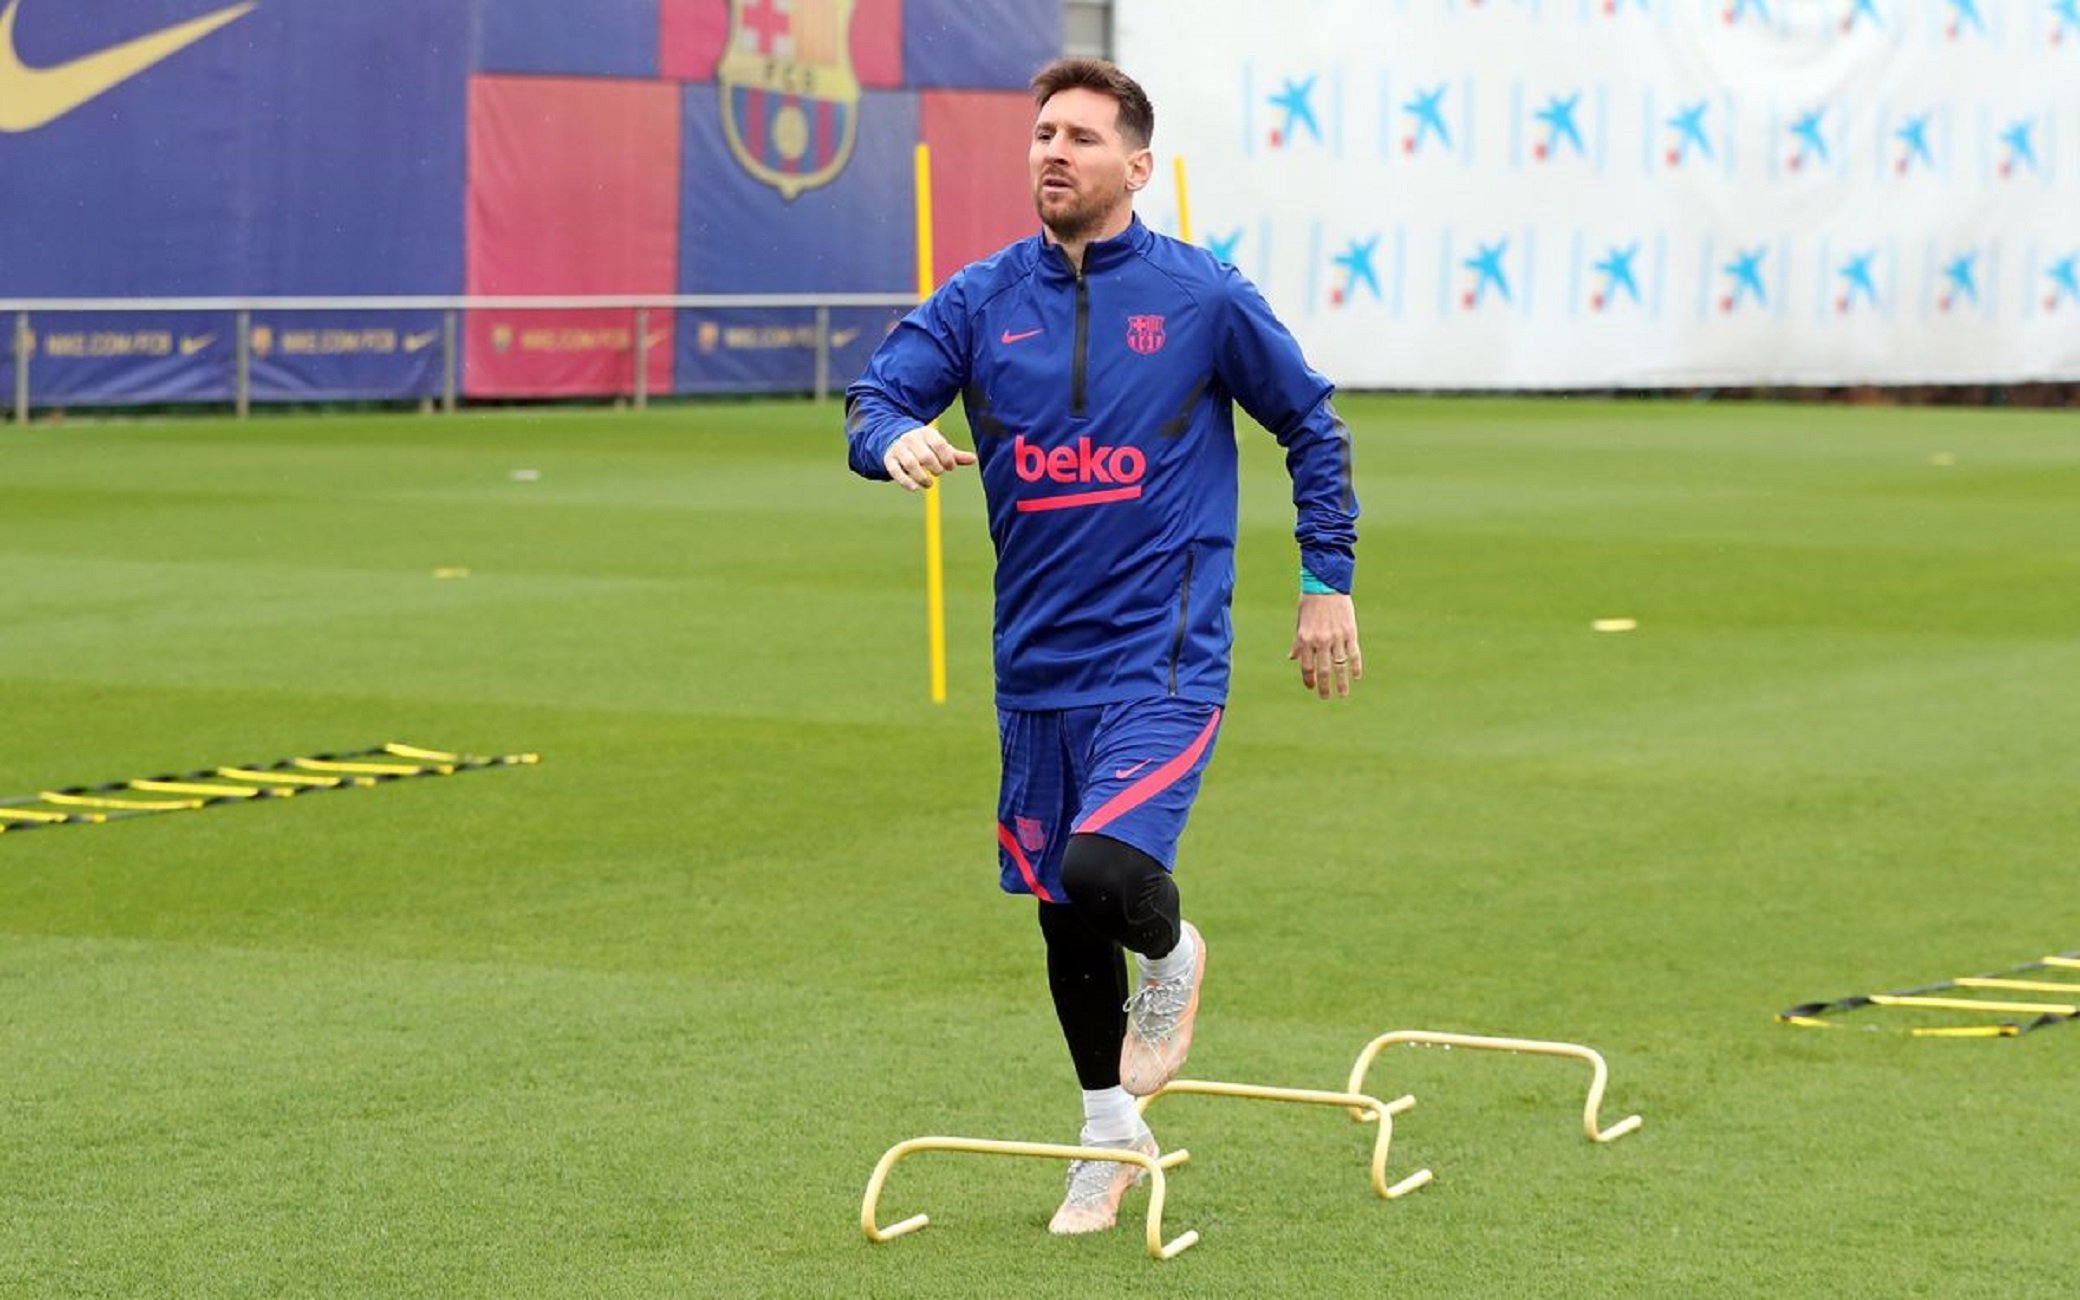 L'Agència de Salut Pública obre un expedient a Messi pel dinar de conjura